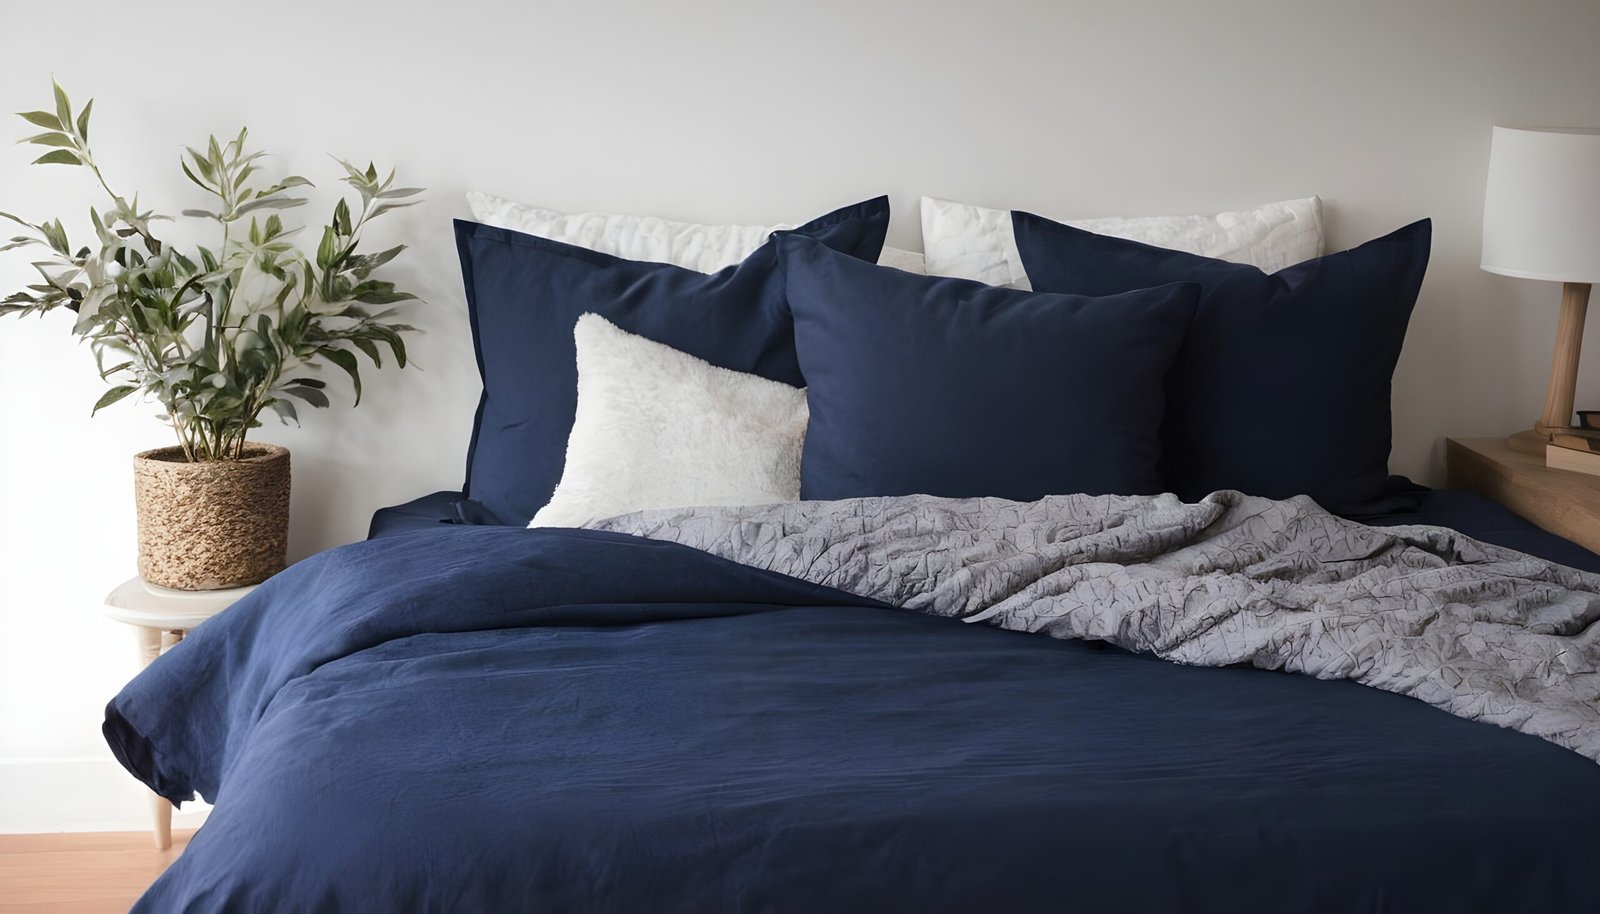 Blue bed sheet arrangement.